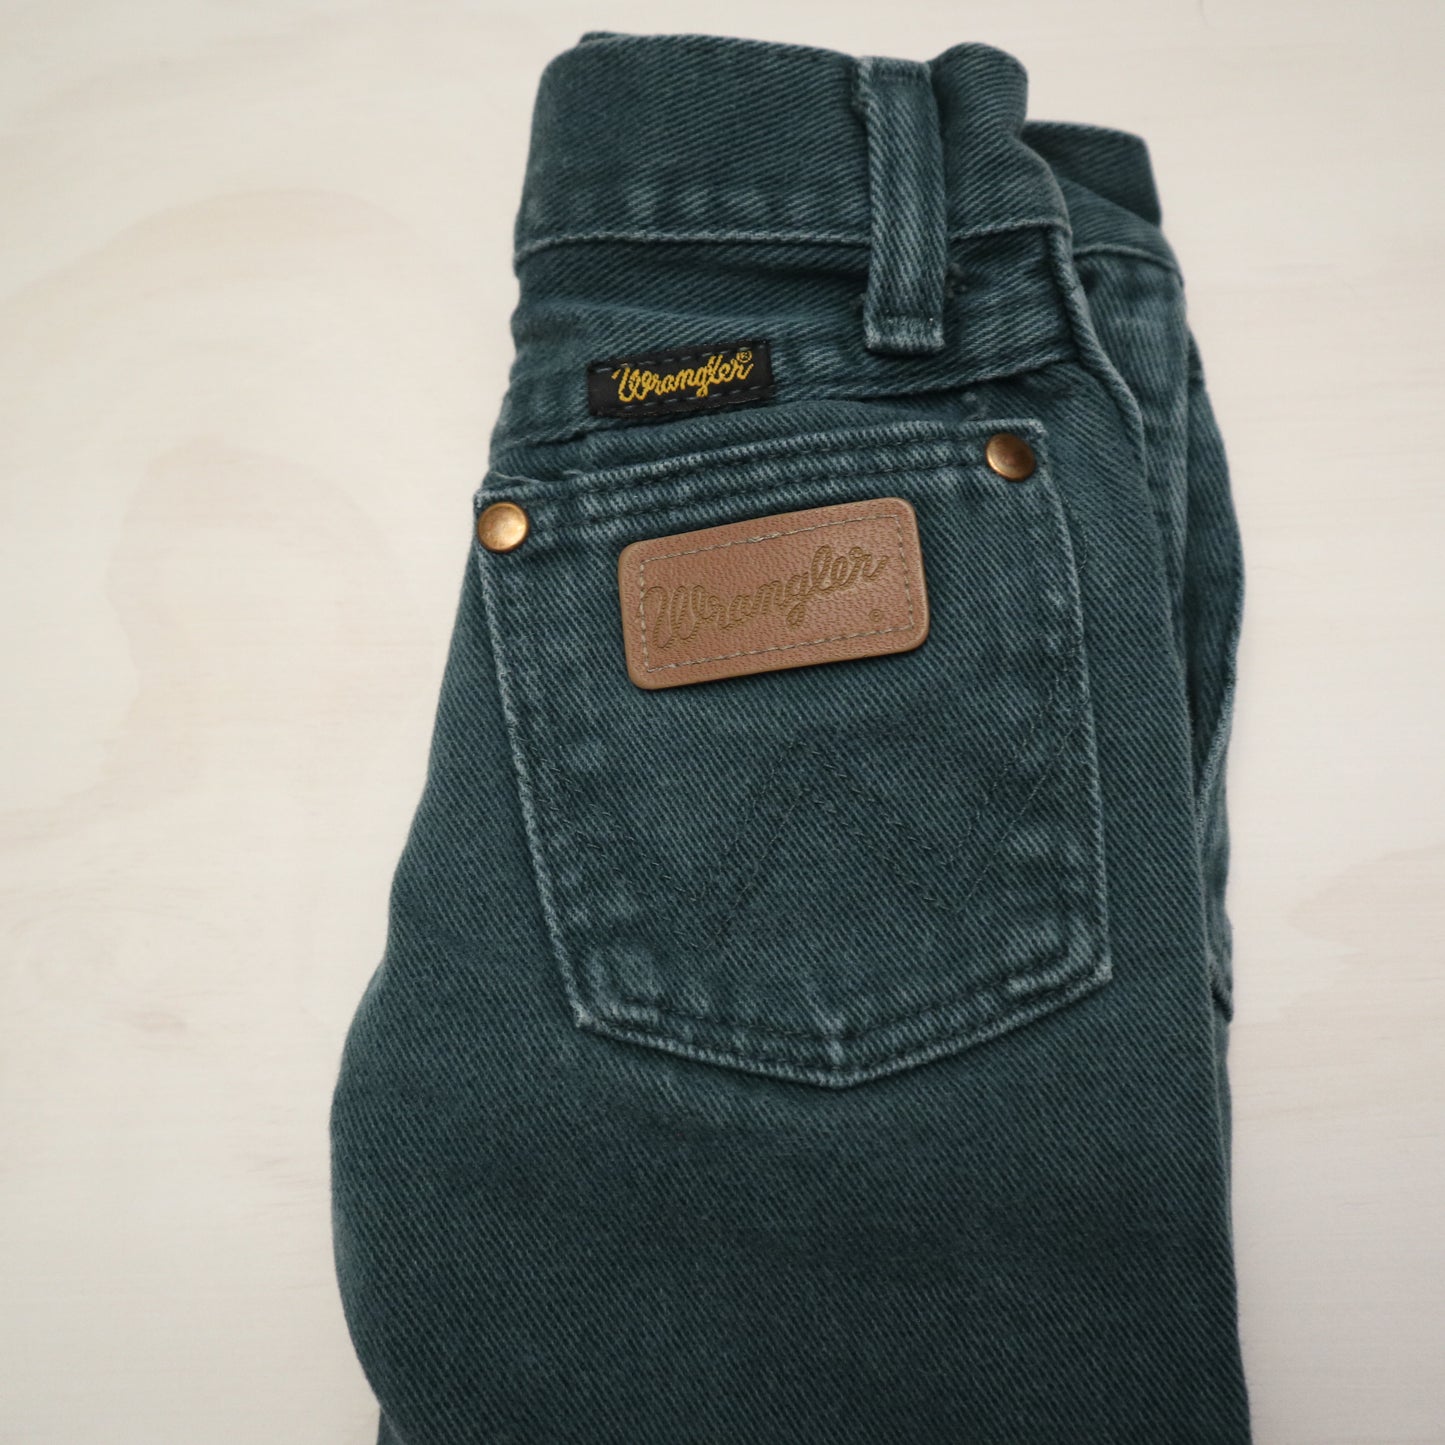 Wrangler - Jeans (4T)